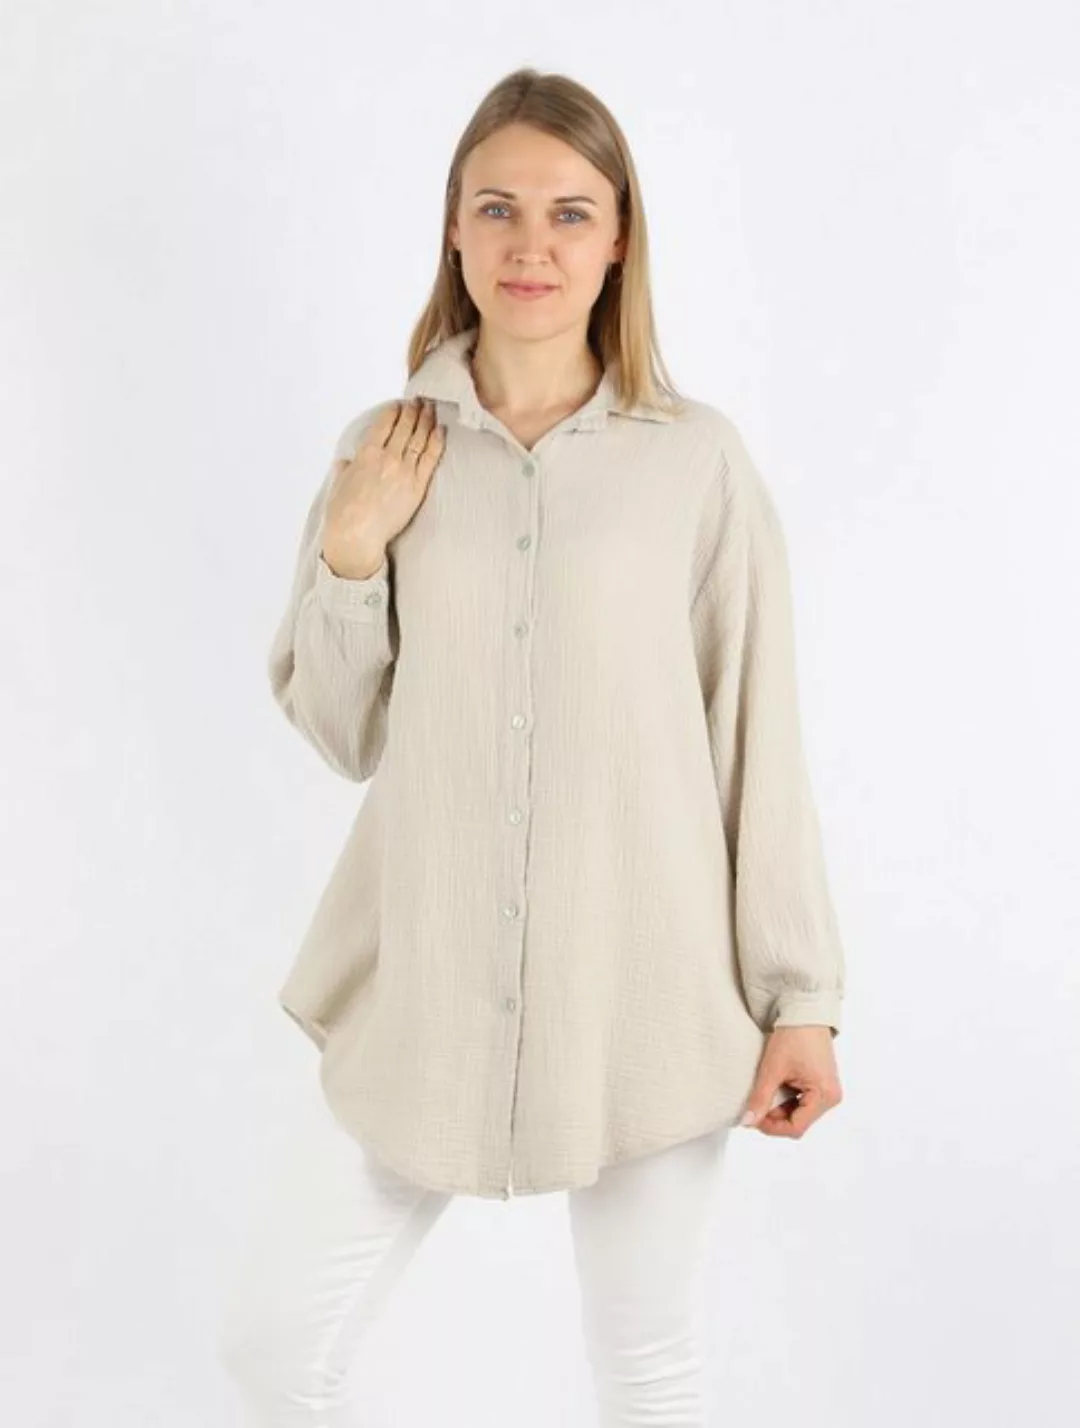 MIRROSI Longbluse Damen Musselin 100% Baumwolle Bluse OVERSIZE Design (Einh günstig online kaufen